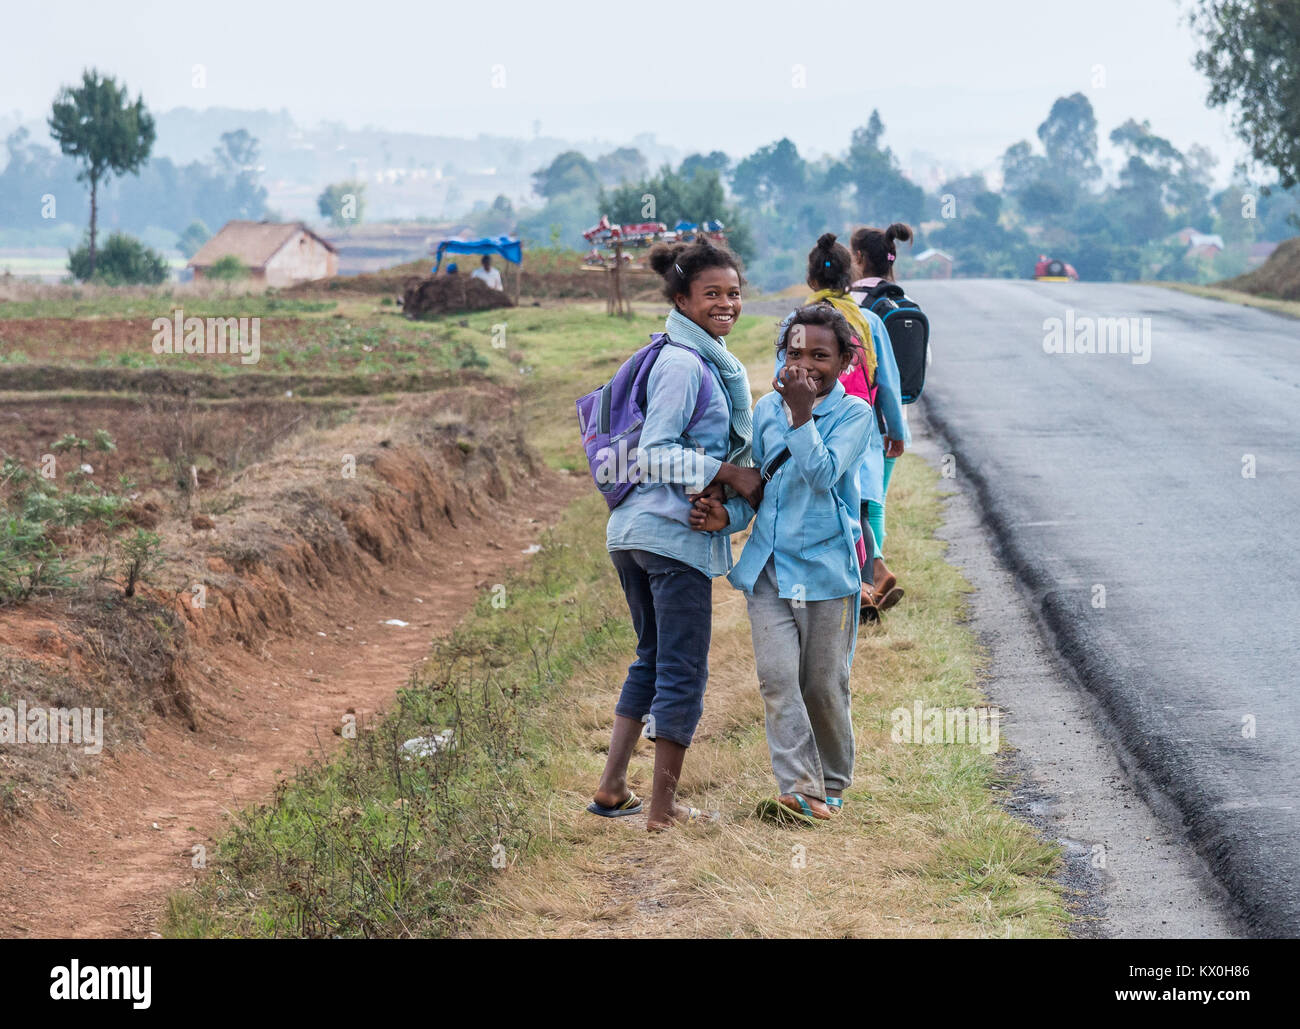 Schule Mädchen in Uniform zu Fuß an der Seite der Straße. Madagaskar, Afrika. Stockfoto